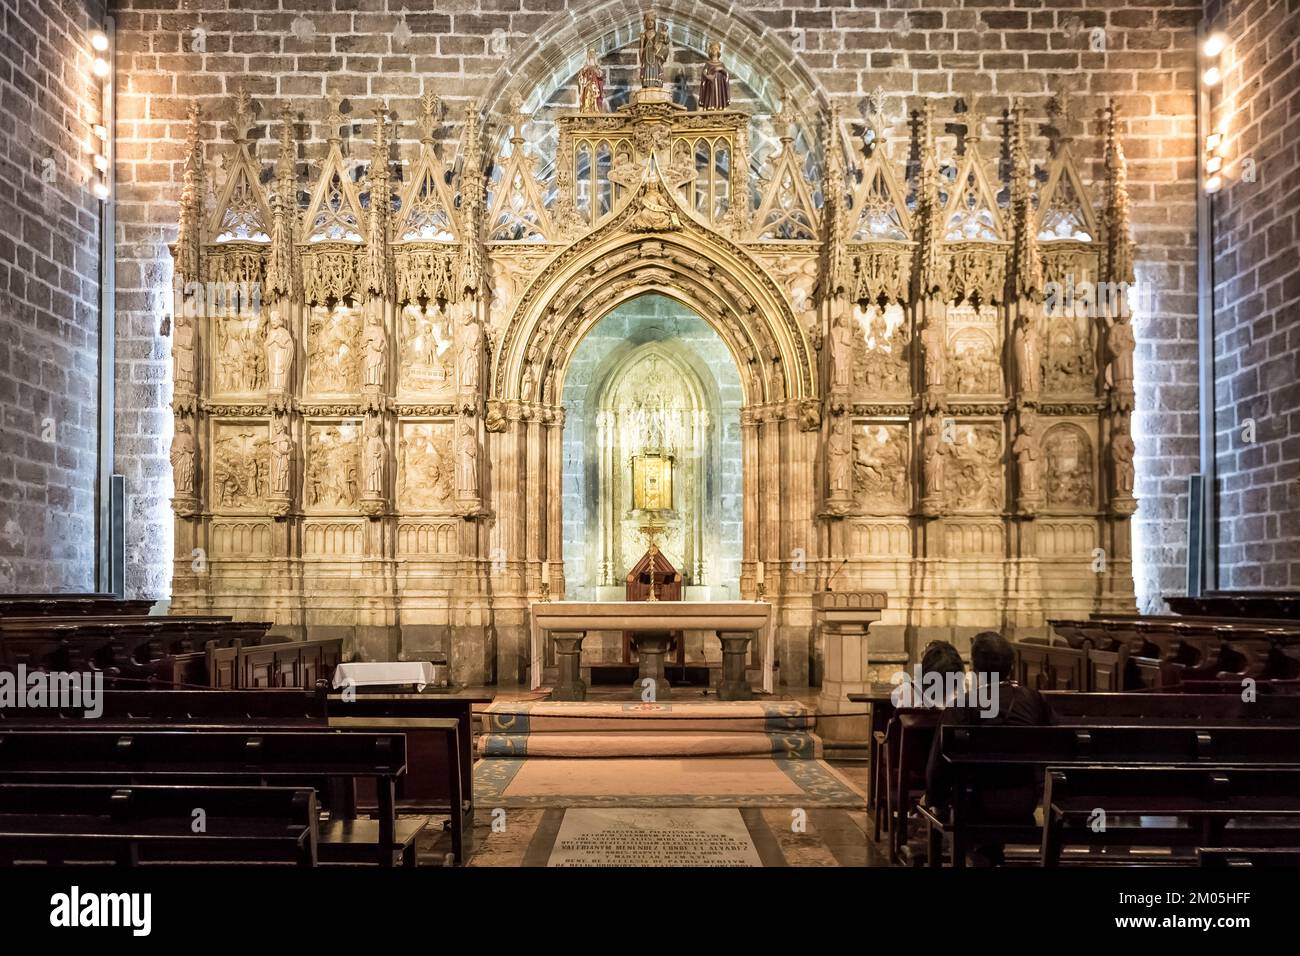 Détail architectural de la chapelle du Saint Chalice, située à l'intérieur de la cathédrale de Valence, dans le centre historique de la ville Banque D'Images